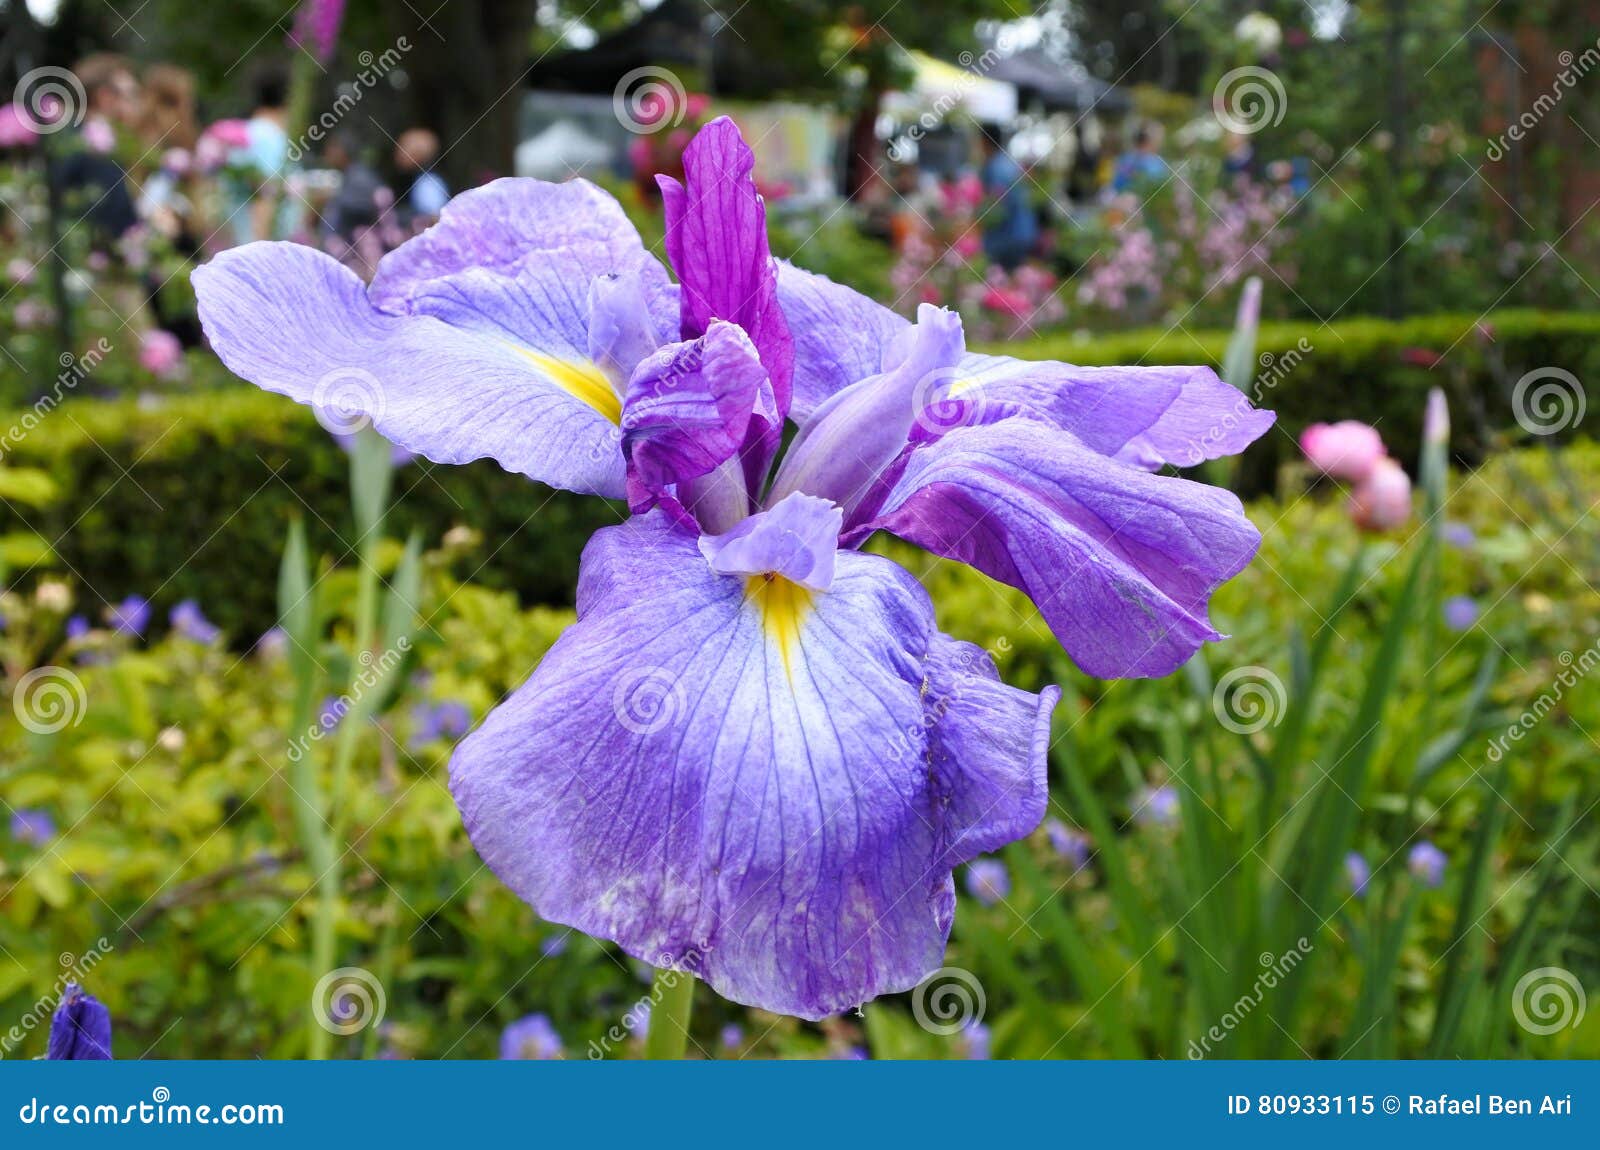 Iris Flower Plant. Iris sibirica Blumenanlage wächst im Garten